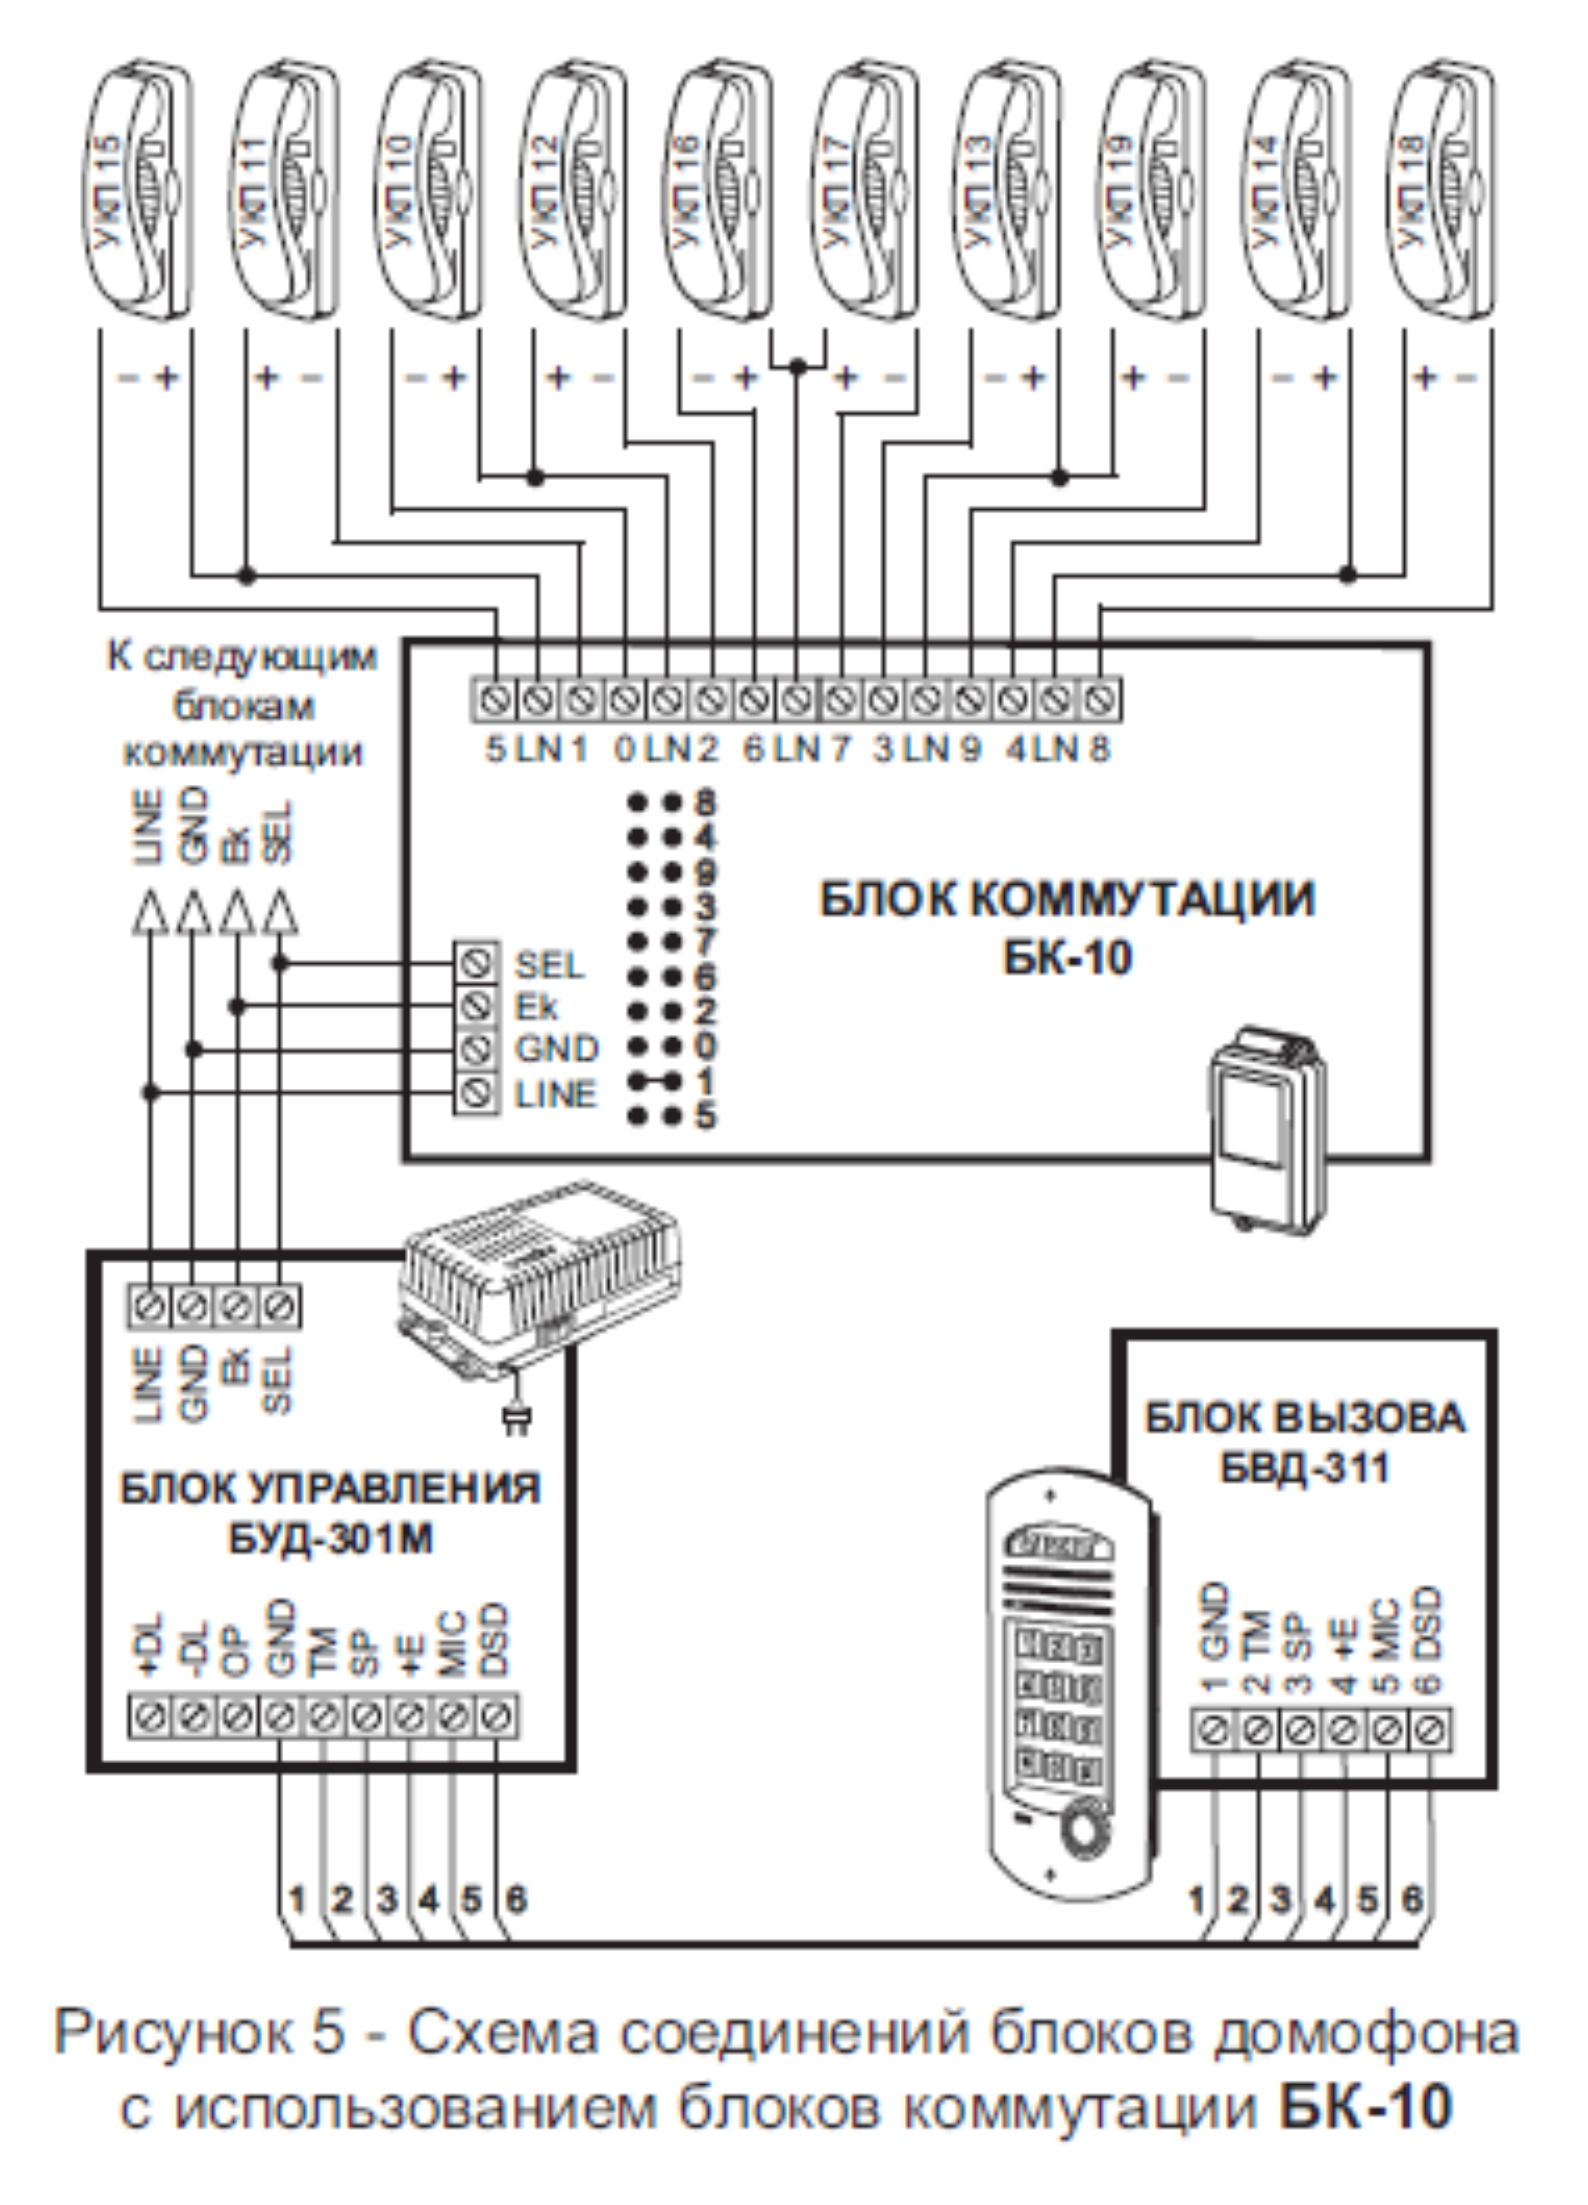  Схема соединений блоков домофона с использованием блоков коммутации БК-10